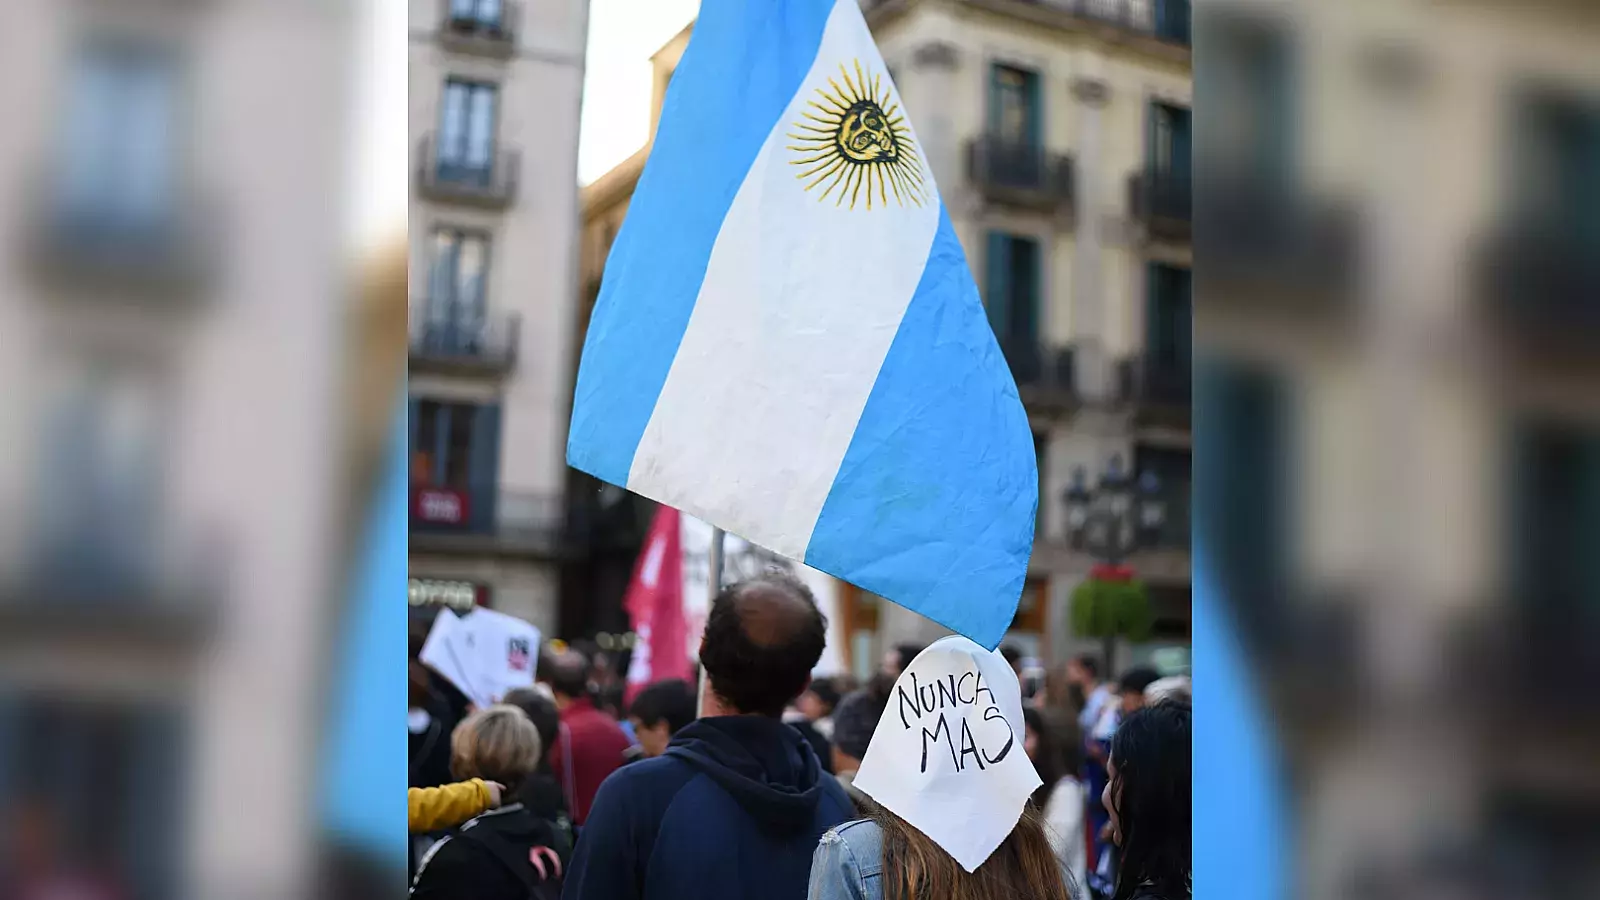 "Se ha socavado de forma progresiva el Estado de Derecho": alerta informe de HRW sobre Argentina